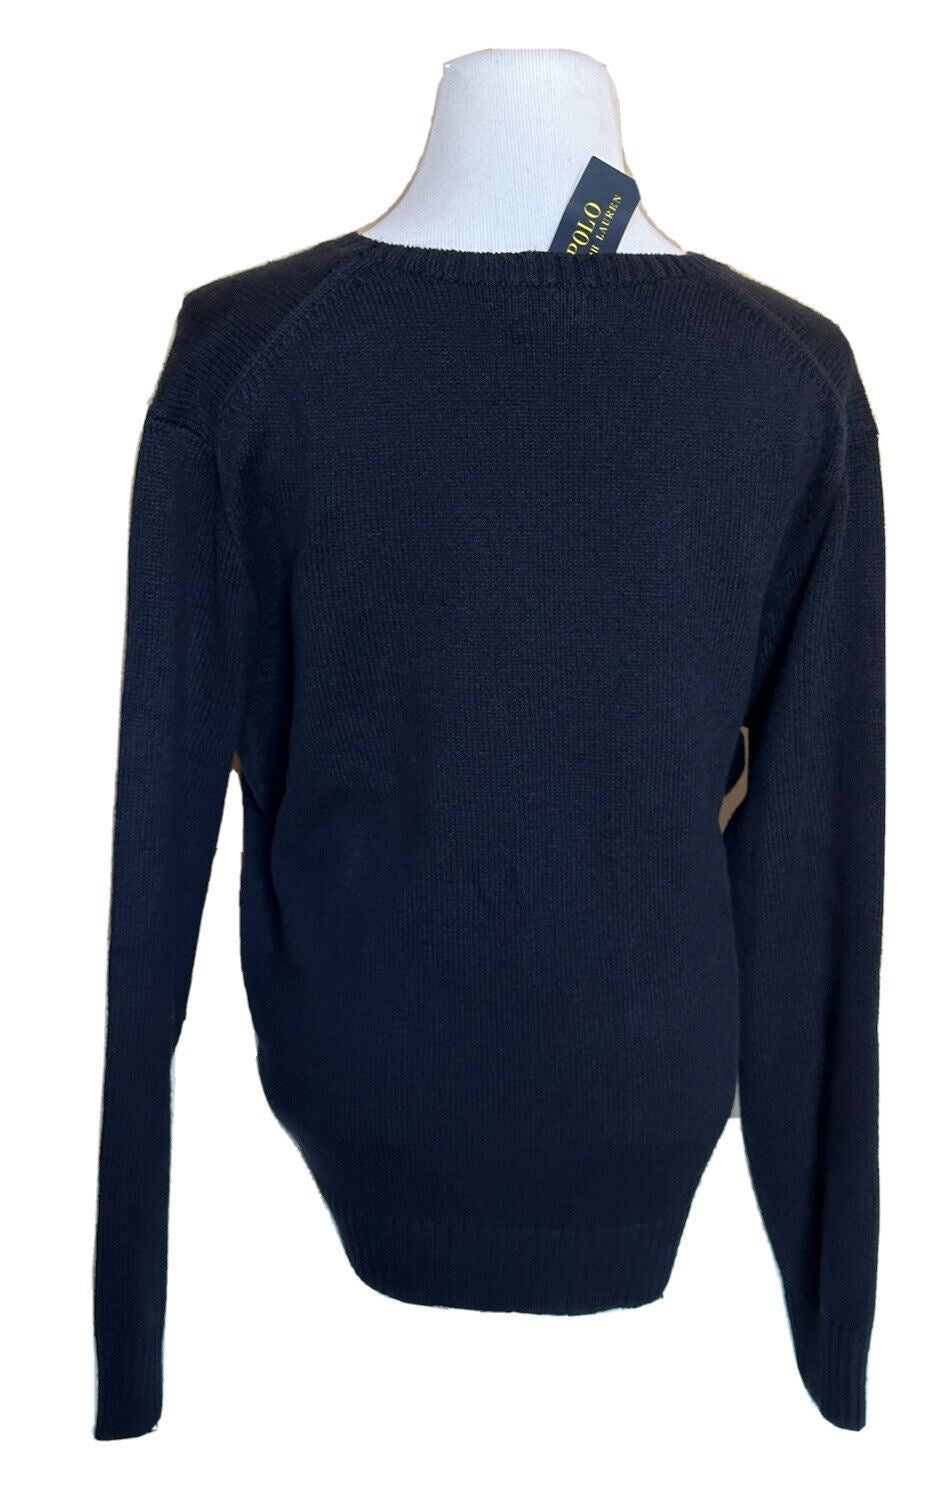 Синий хлопковый/льняной свитер Polo Ralph Lauren Big Pony Bear 2XLT (NWT 428 долларов США) 